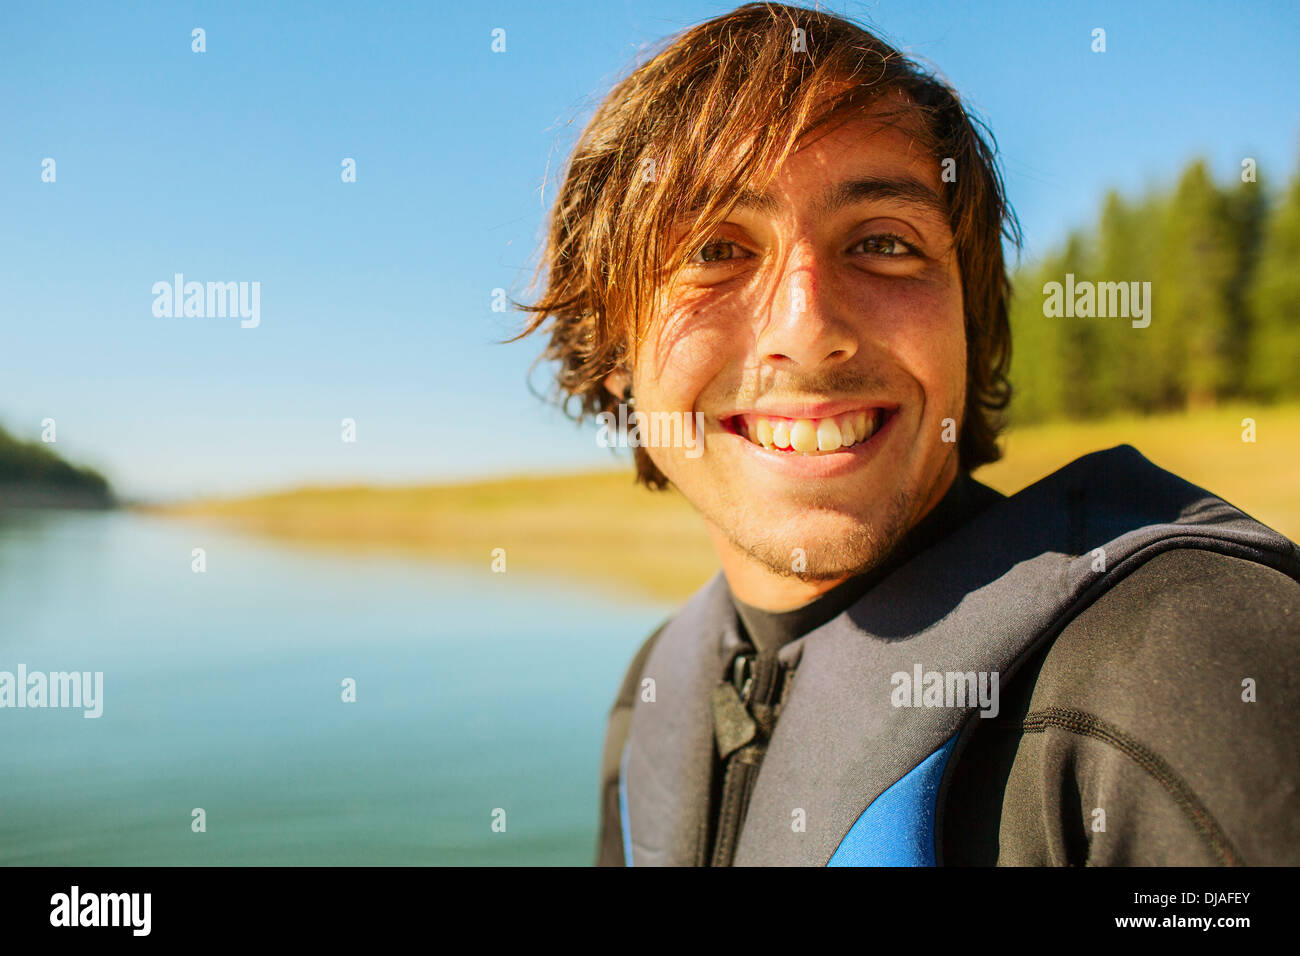 Caucasian man smiling by rural lake Stock Photo